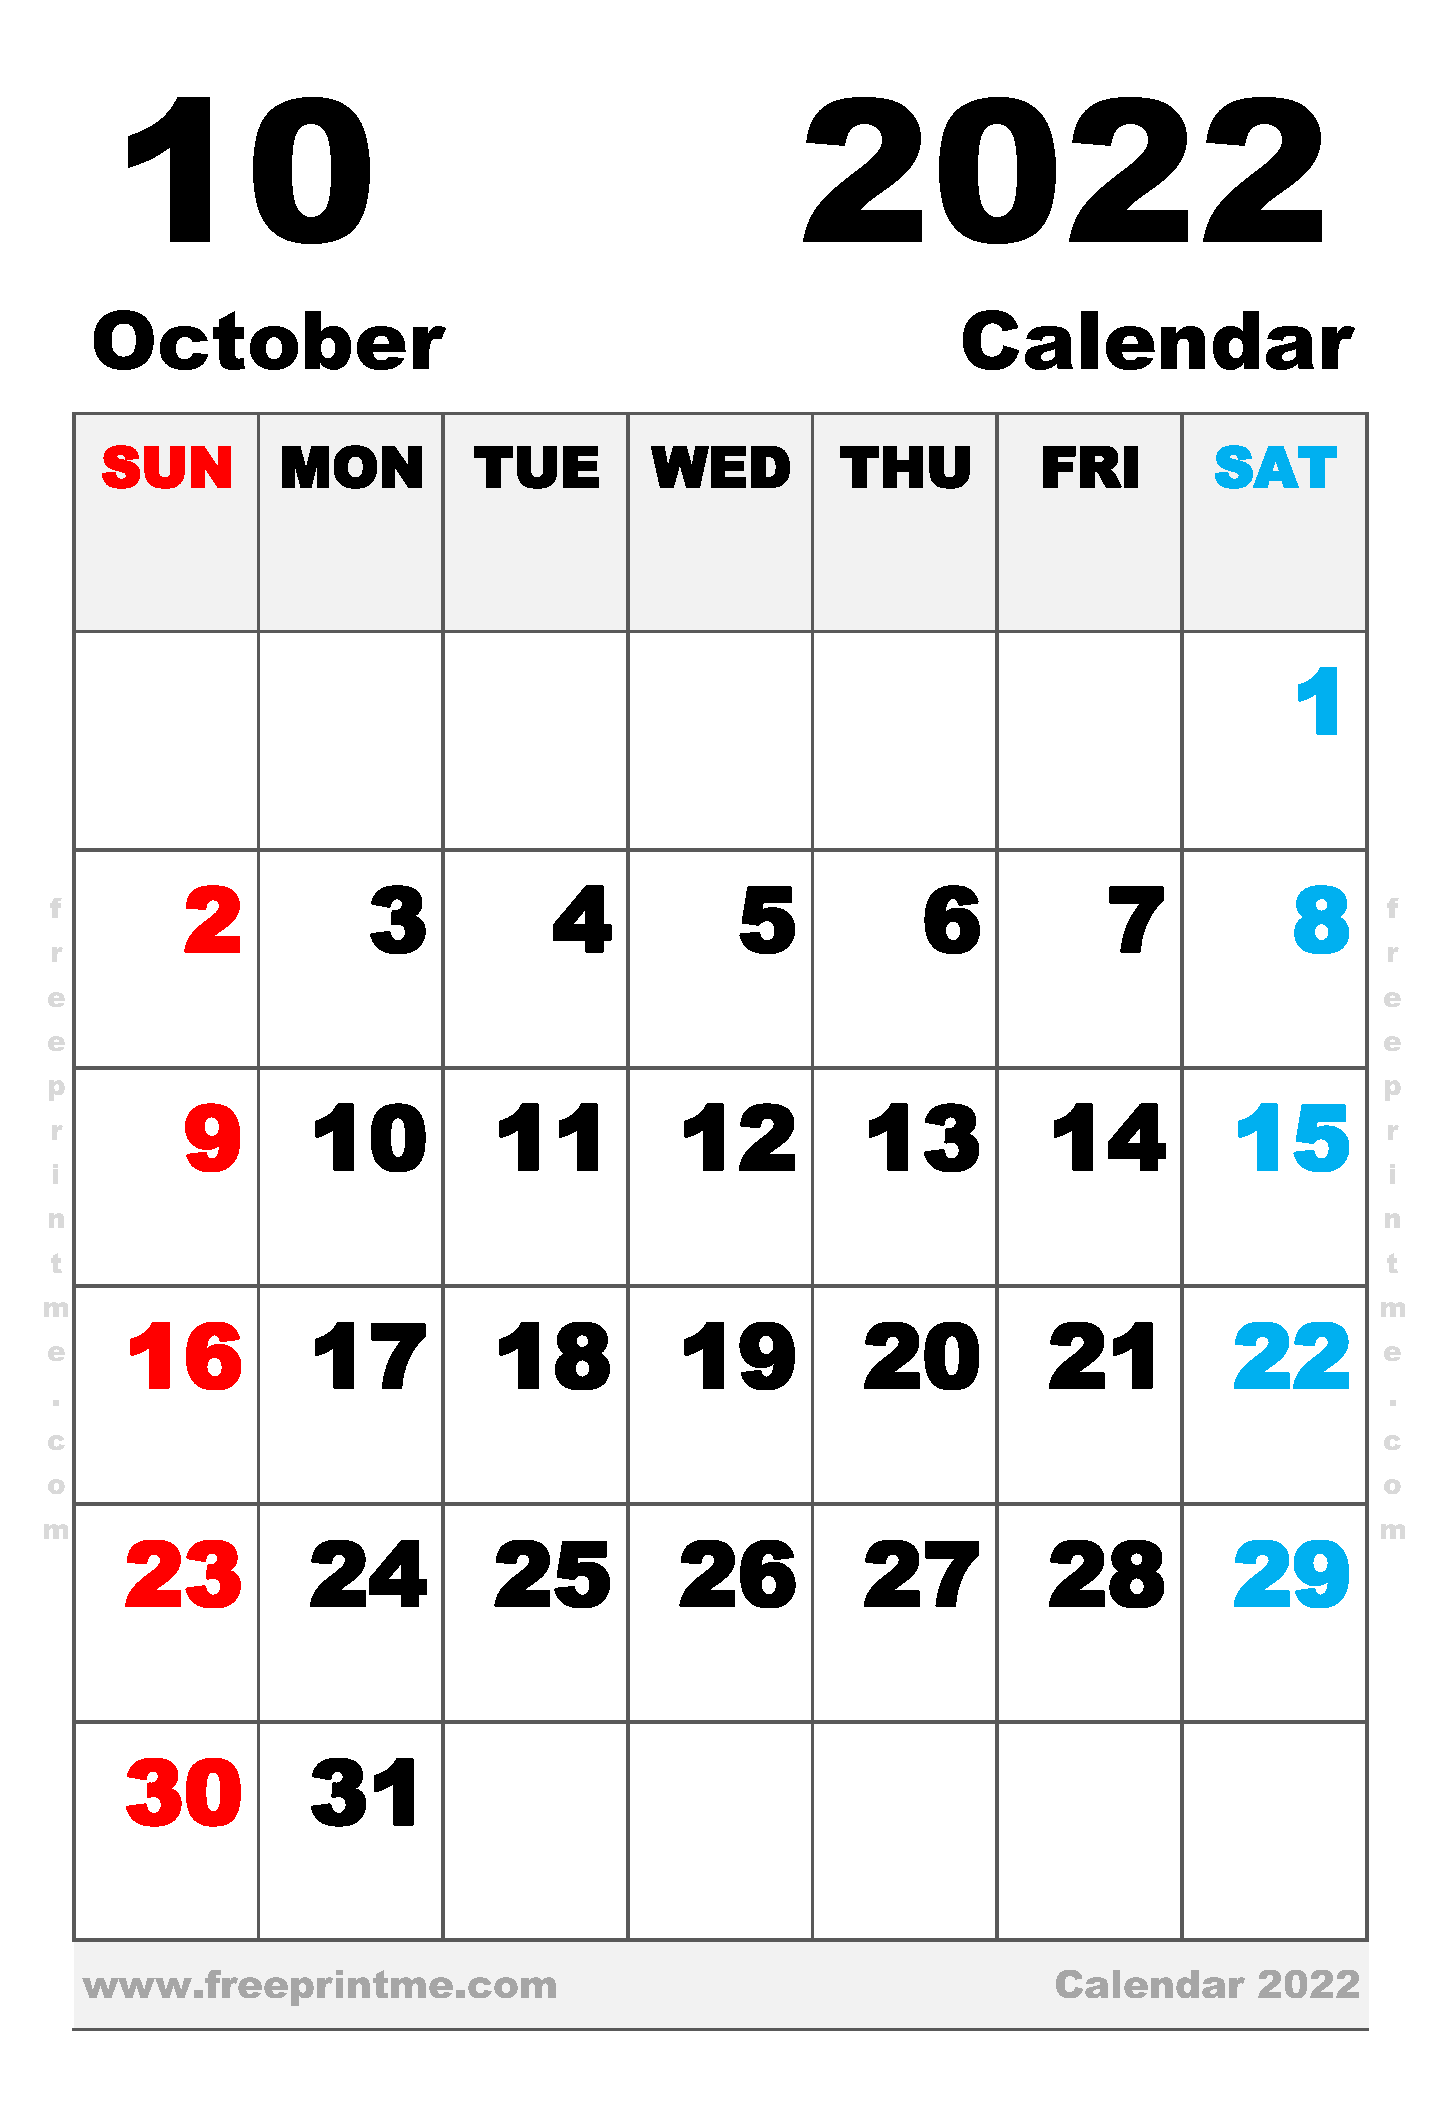 Free Printable October 2022 Calendar Executive